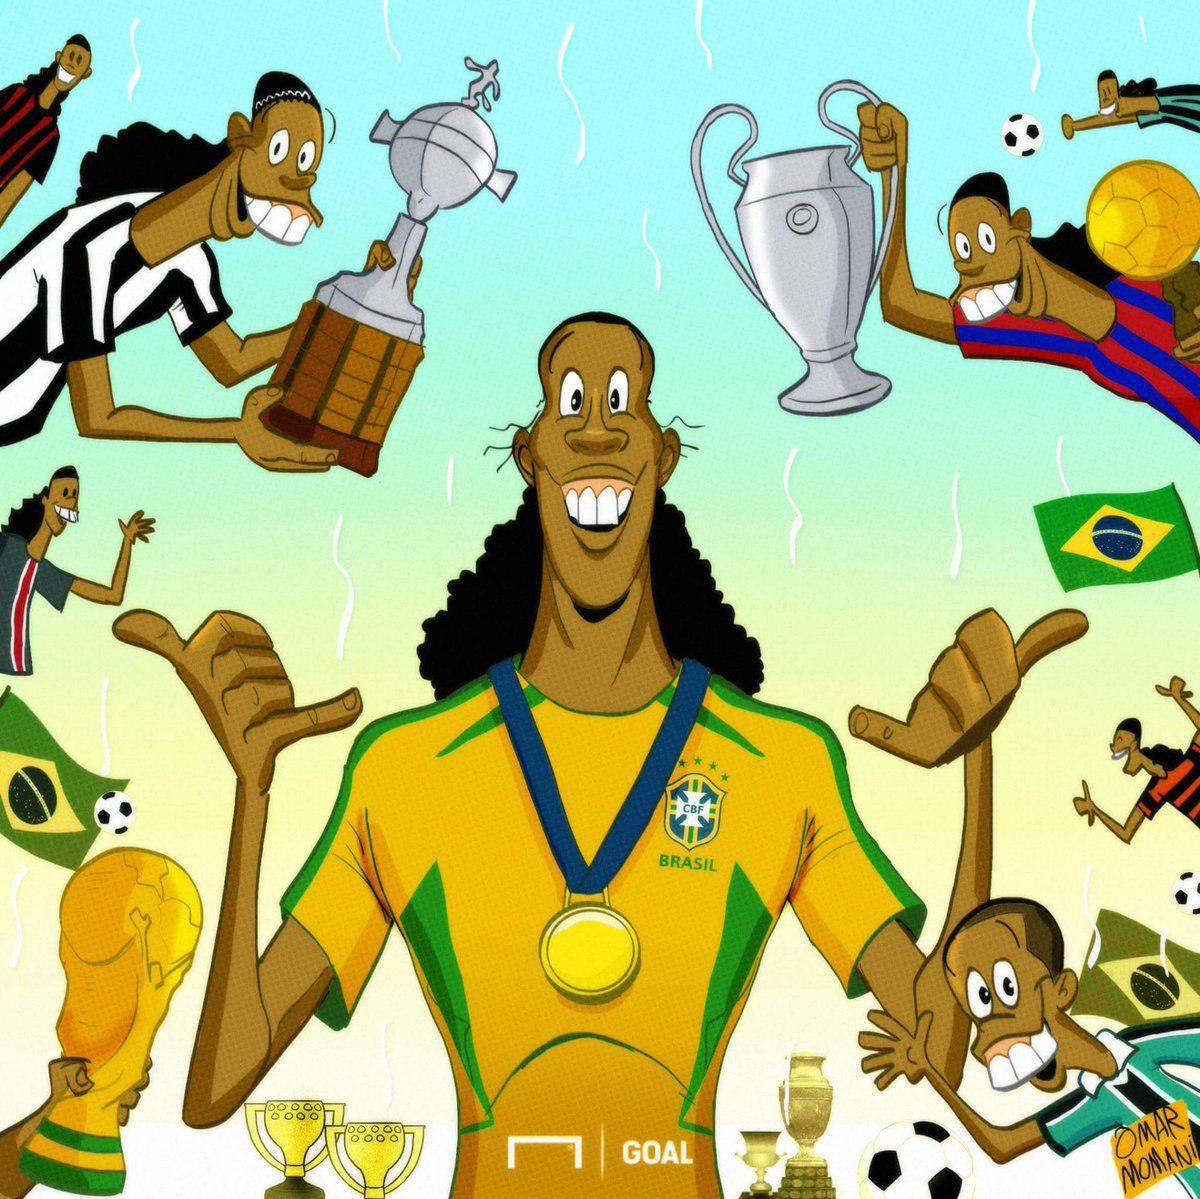 کاریکاتور افتخارات رونالدینیو,کاریکاتور رونالدینیو و افتخارات ورزشی,کاریکاتور رونالدینیو در دوران فوتبال,کاریکاتور,عکس کاریکاتور,کاریکاتور ورزشی